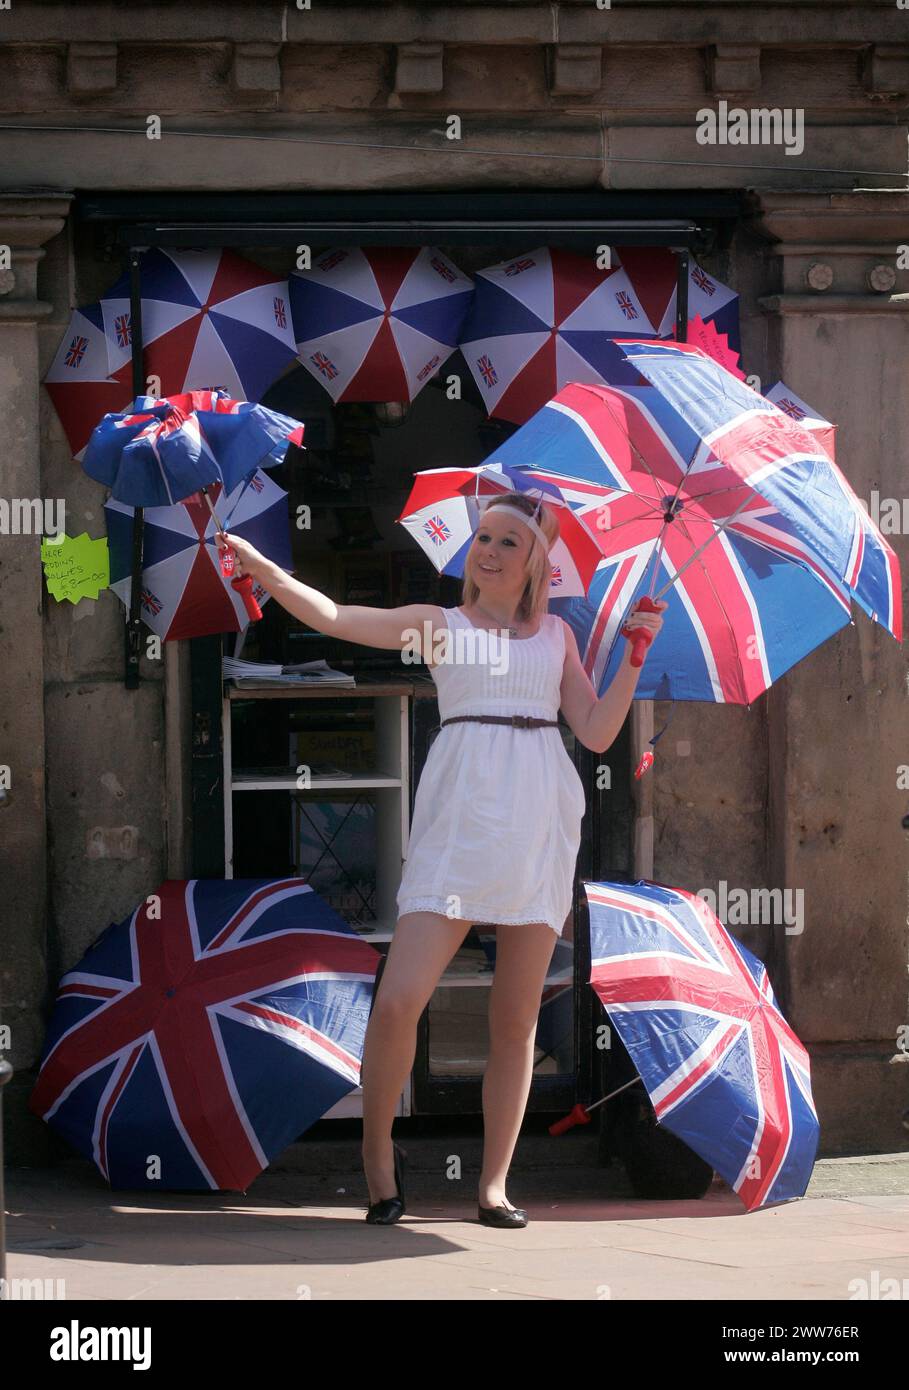 27/04/11. ..avec une probabilité de 60% de prévisions de pluie pour vendredi, Sarah Bean (20 ans) a une journée chargée au soleil vendant des parapluies union jack à Utto Banque D'Images